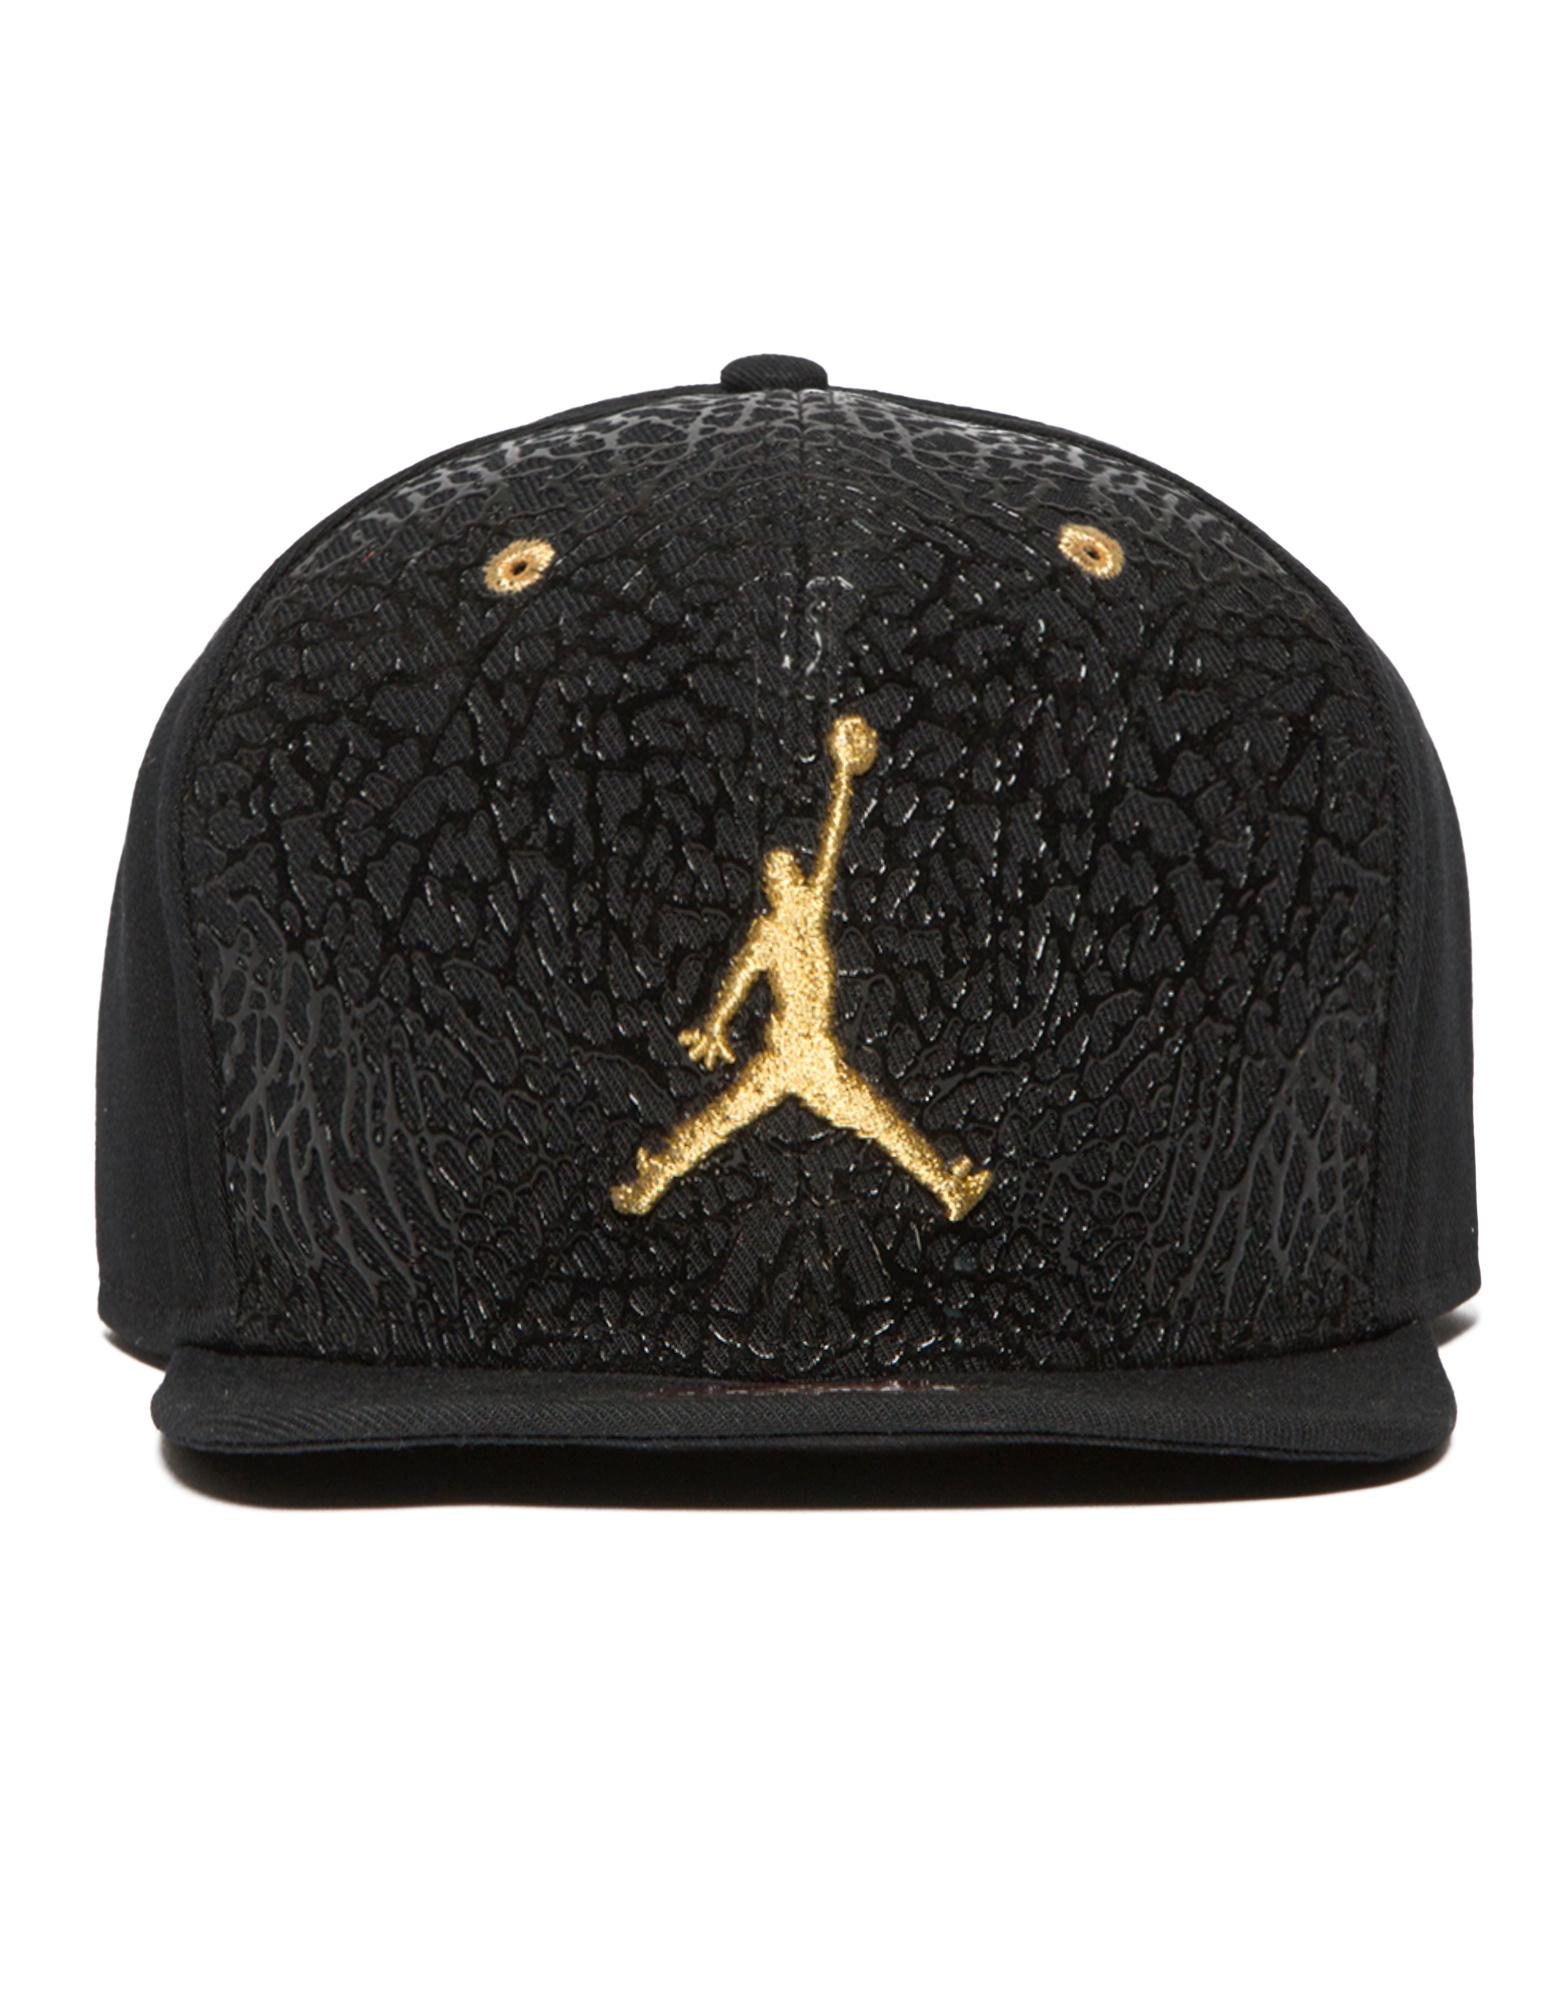 jordan hat black and gold